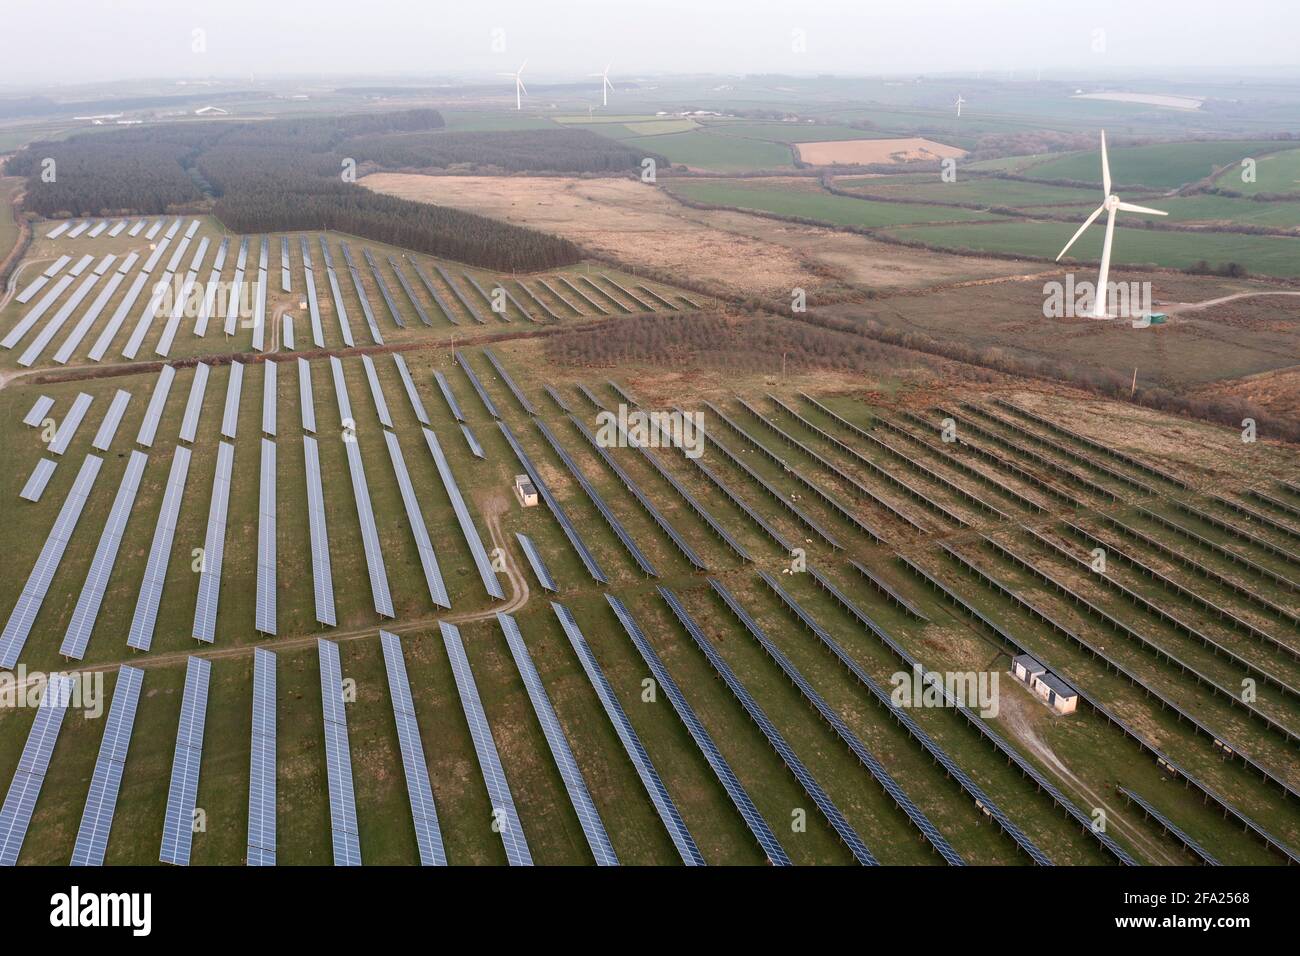 Vue aérienne d'une ferme solaire dans le sud-ouest de l'Angleterre, au Royaume-Uni Banque D'Images